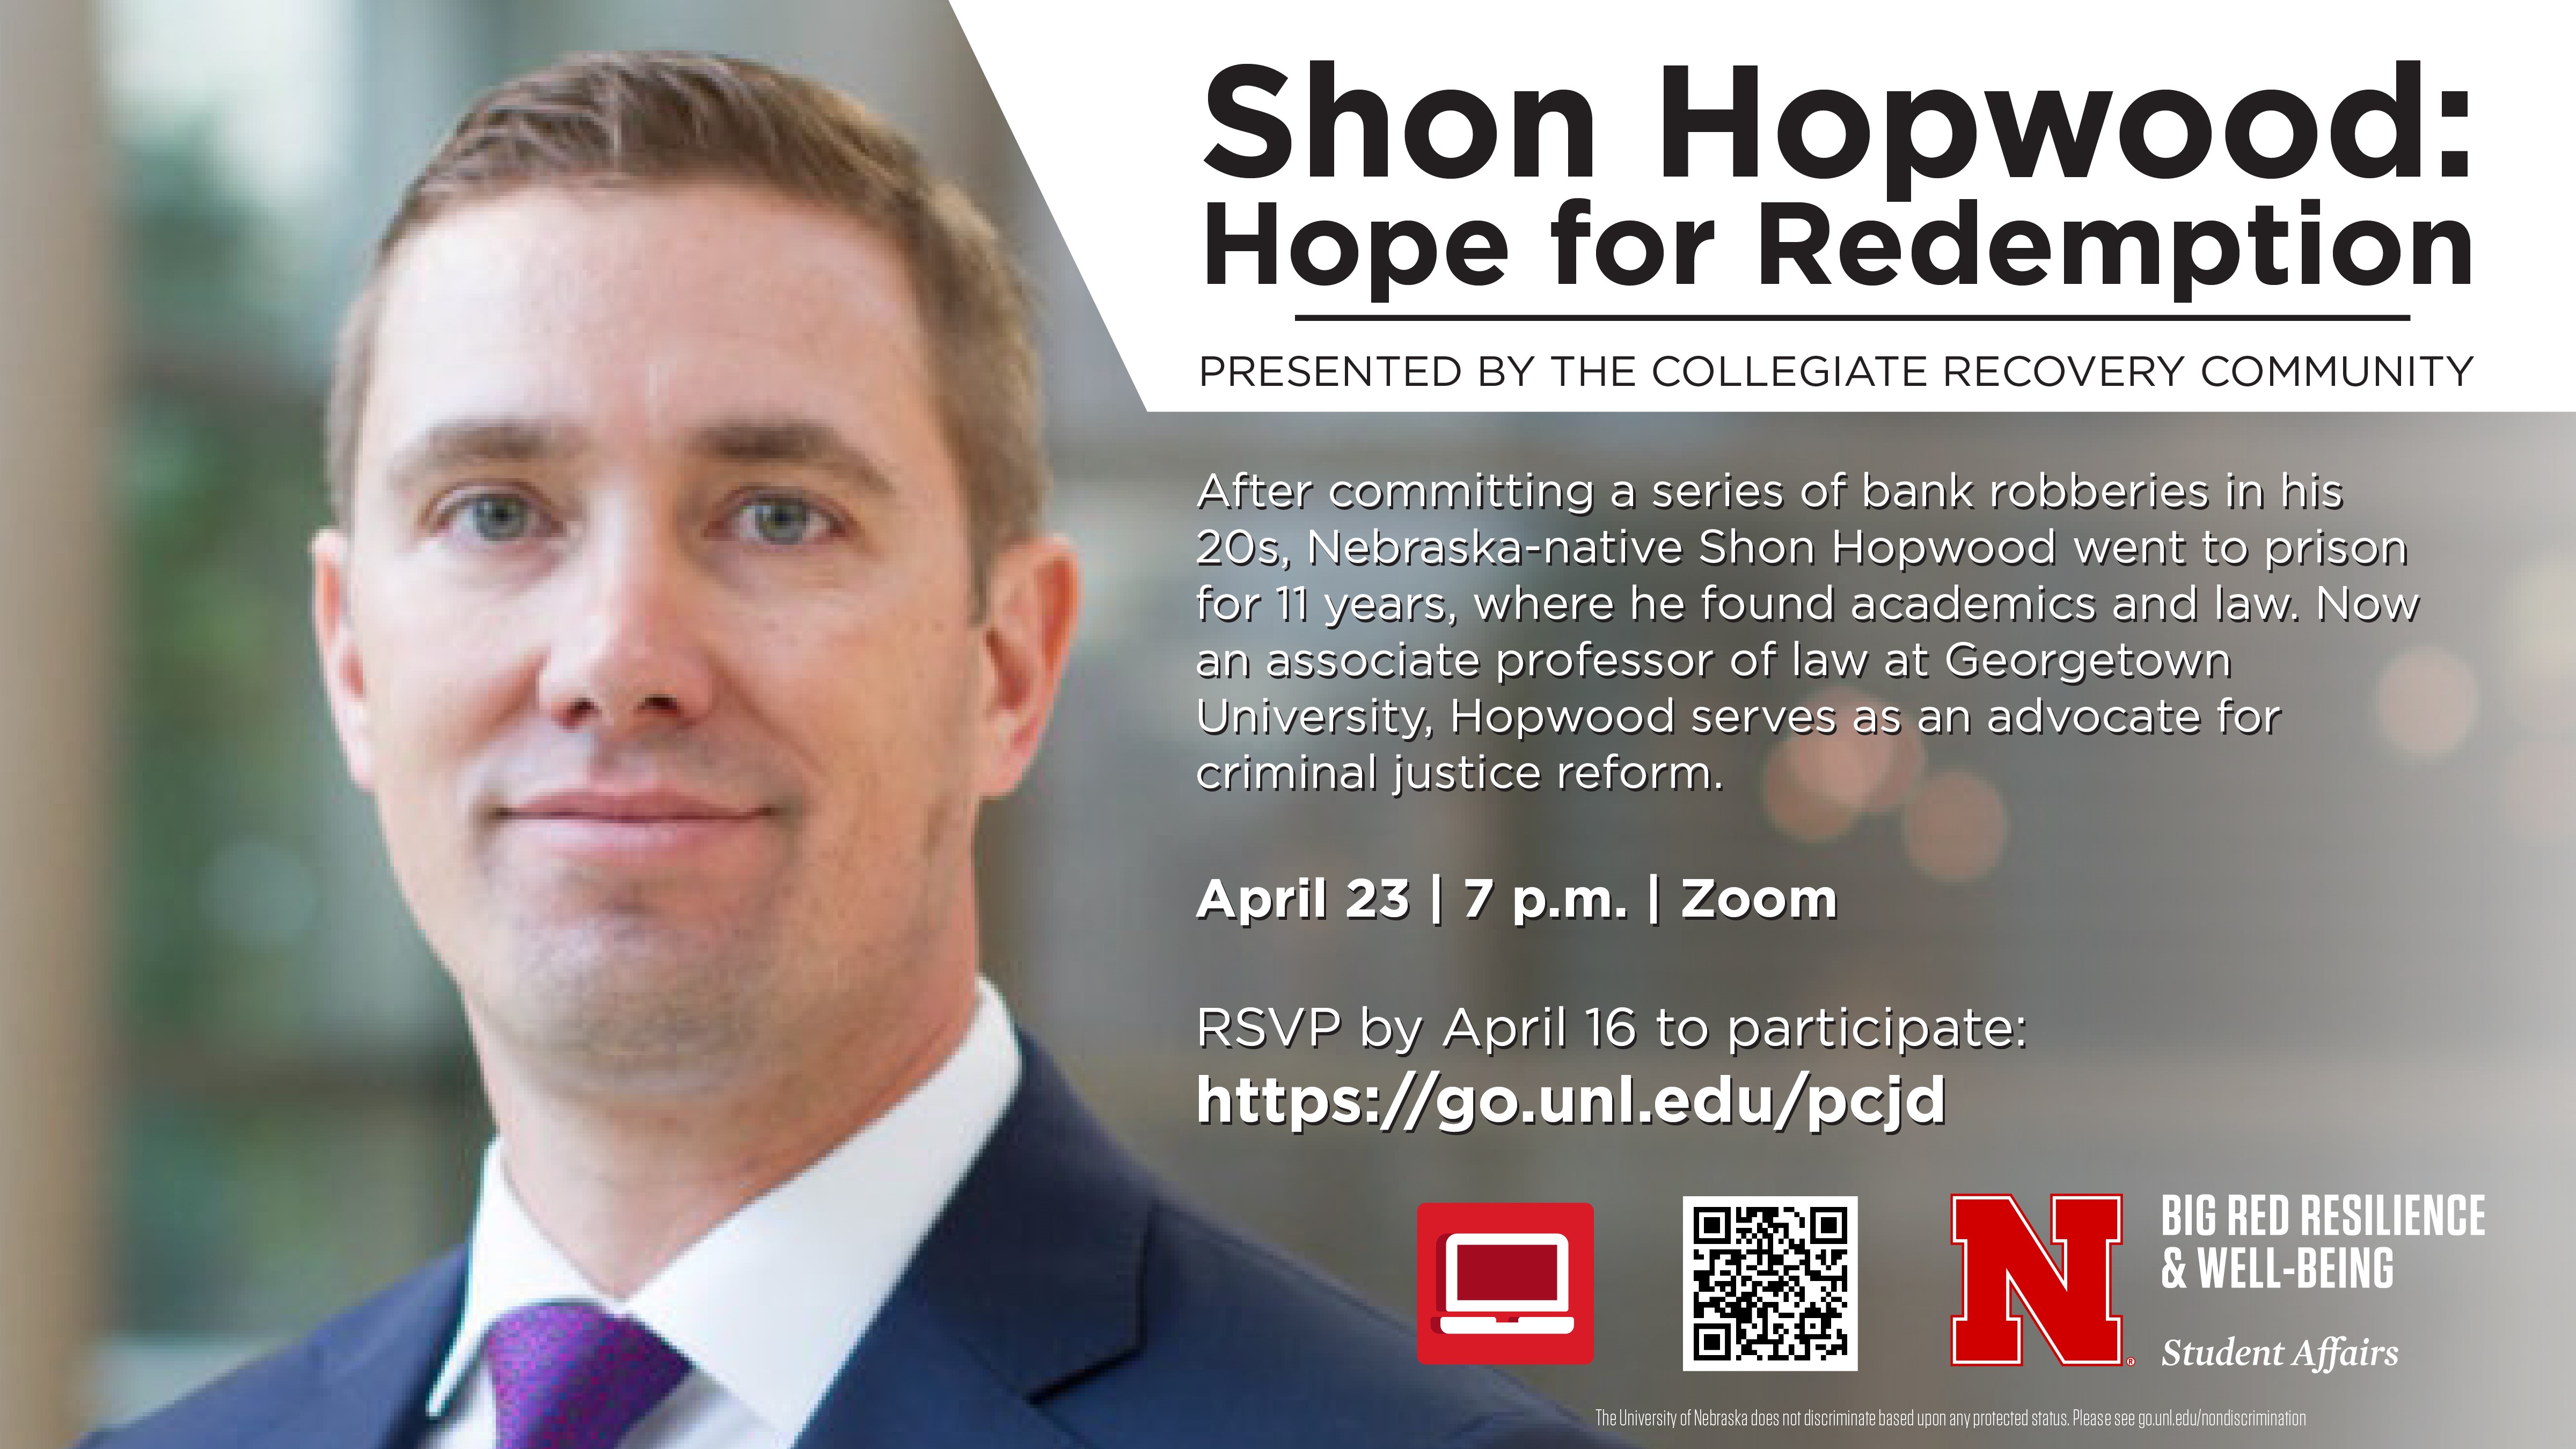 Shon Hopwood: Hope for Redemption